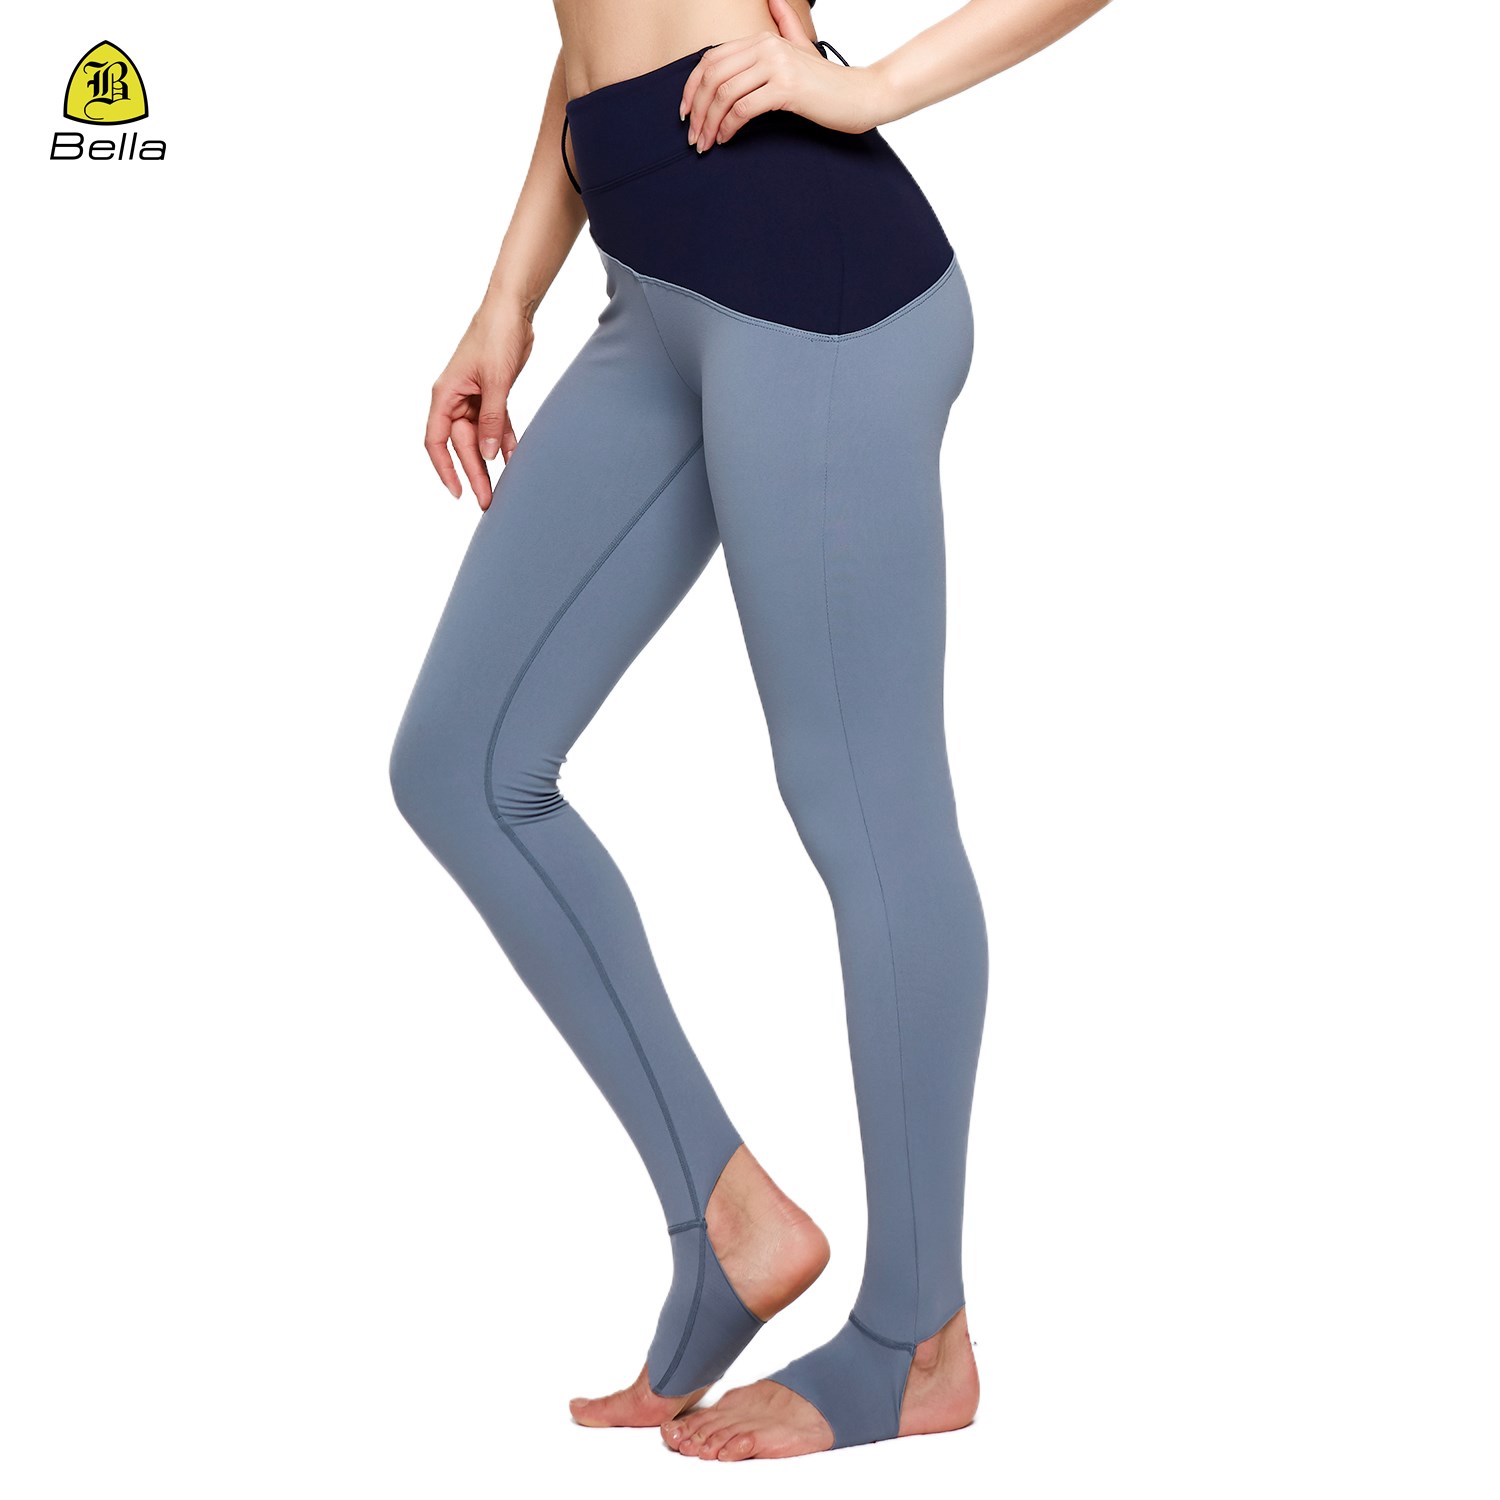 Kemer tokası tasarımı rahat yumuşak sıkıştırma yoga pantolonu